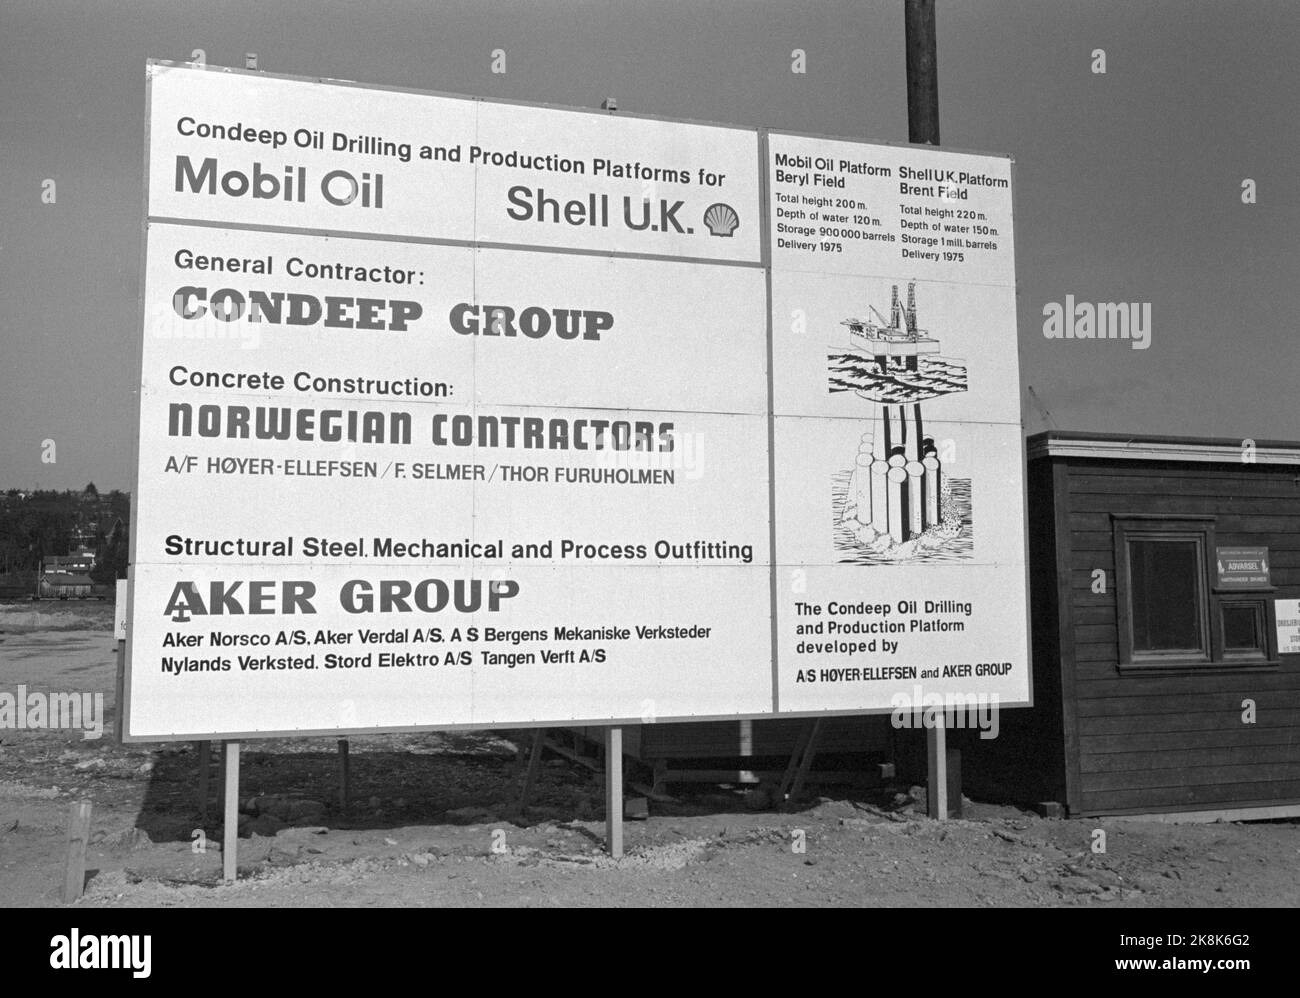 Hinnavågen 1974 State and Oil Modies zwei Ölplattformen sind im Bau für mobile und Shell. Die Plattformen gehen zu den Brennblöcken hinaus. Hier ist ein Schild, das die verschiedenen Unternehmer zeigt. Foto; Sverre A. Børretzen / Aktuell / NTB Stockfoto